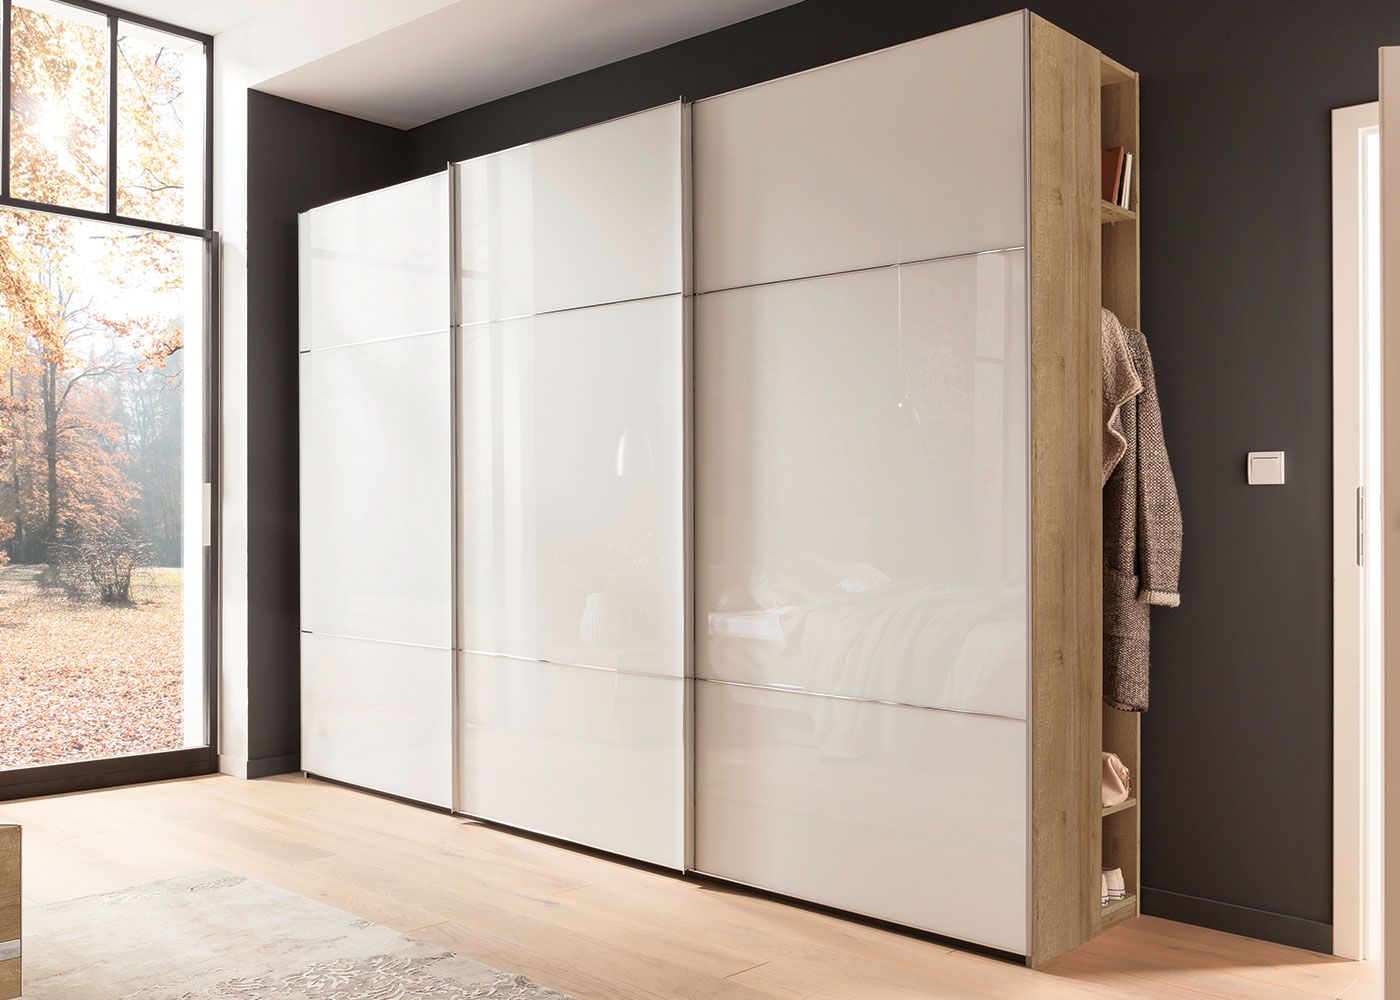 Nolte Möbel Marcato 2.3 3 Door Wardrobe – Midfurn Furniture Superstore Regarding 3 Door Wardrobes (Photo 12 of 15)